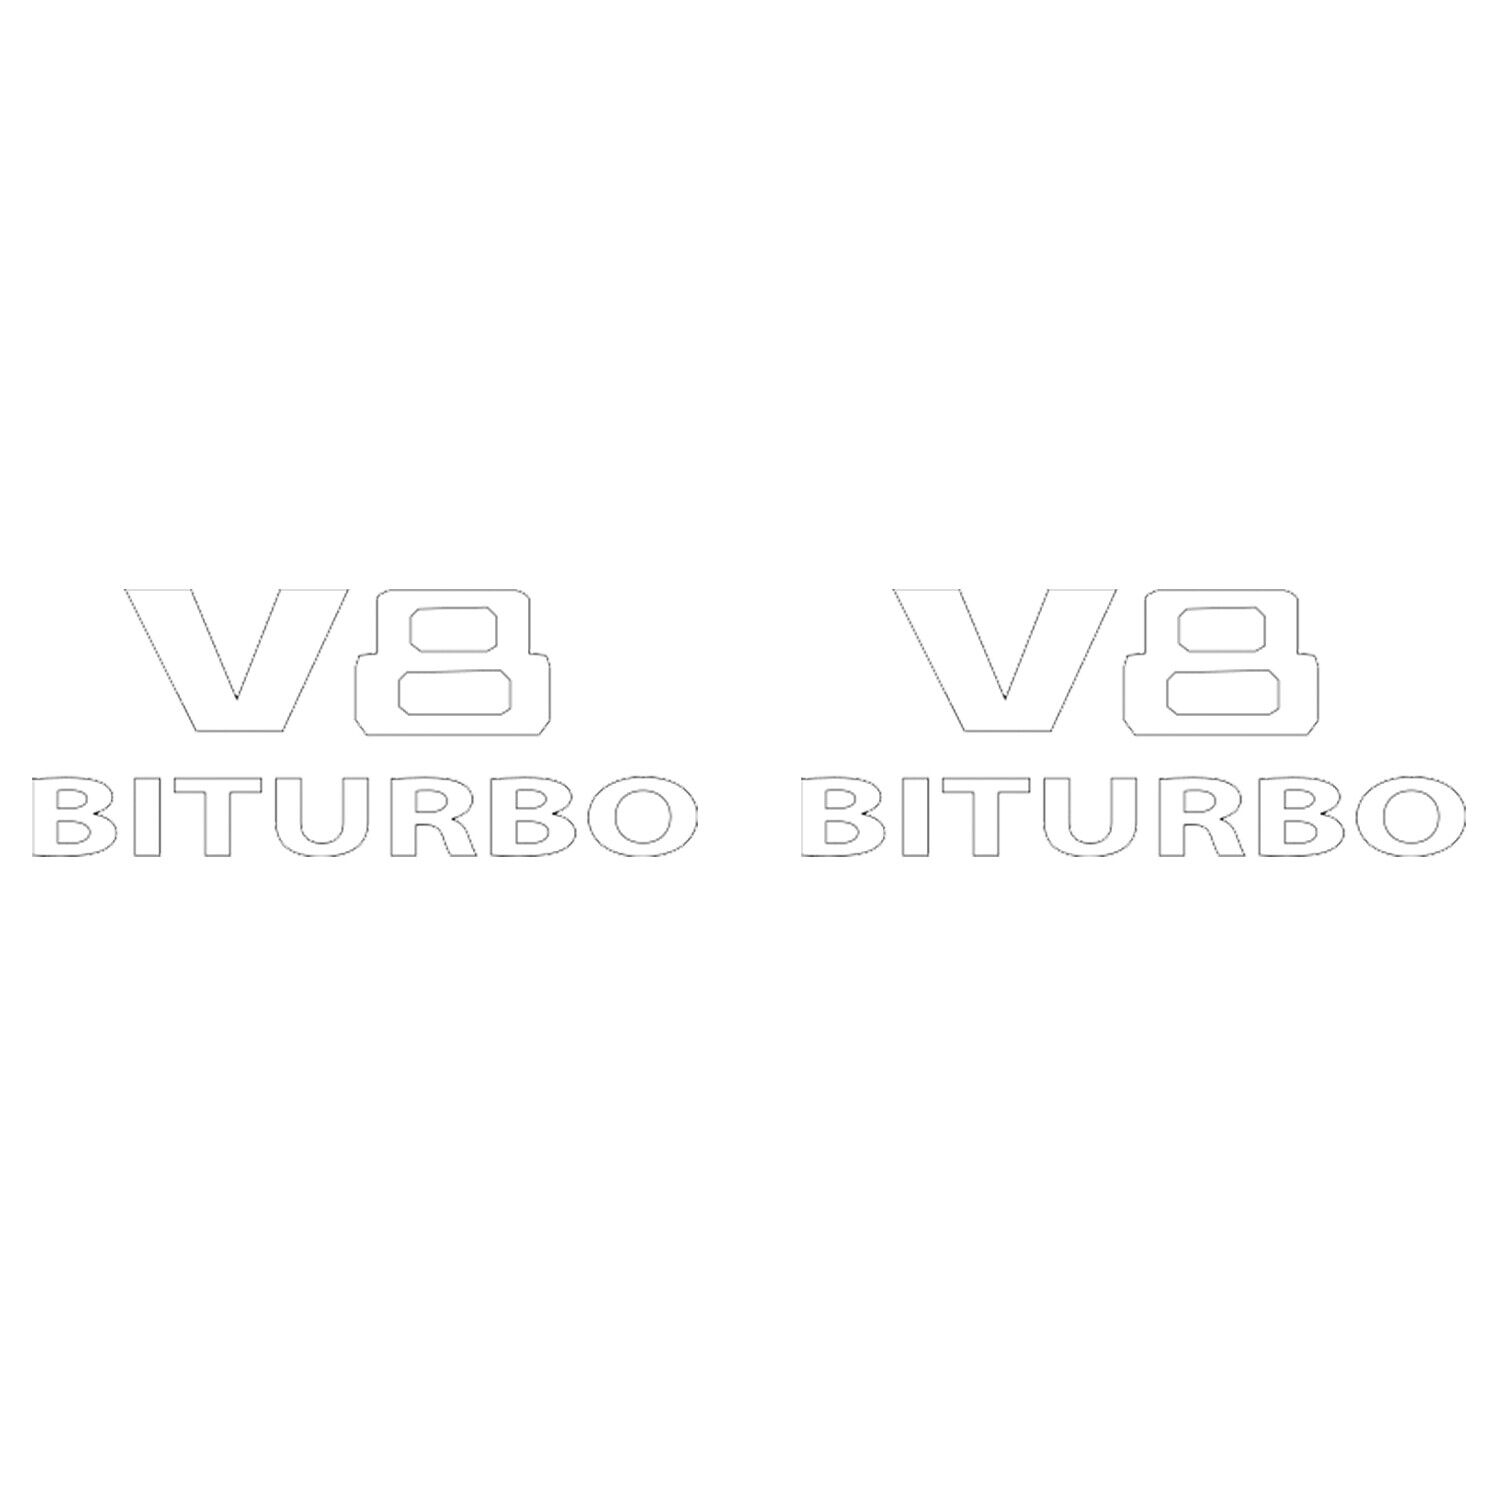 Genuine OEM Set of 2 'V8 Biturbo' Fender Emblems for Mercedes W463 G63 AMG 19-23